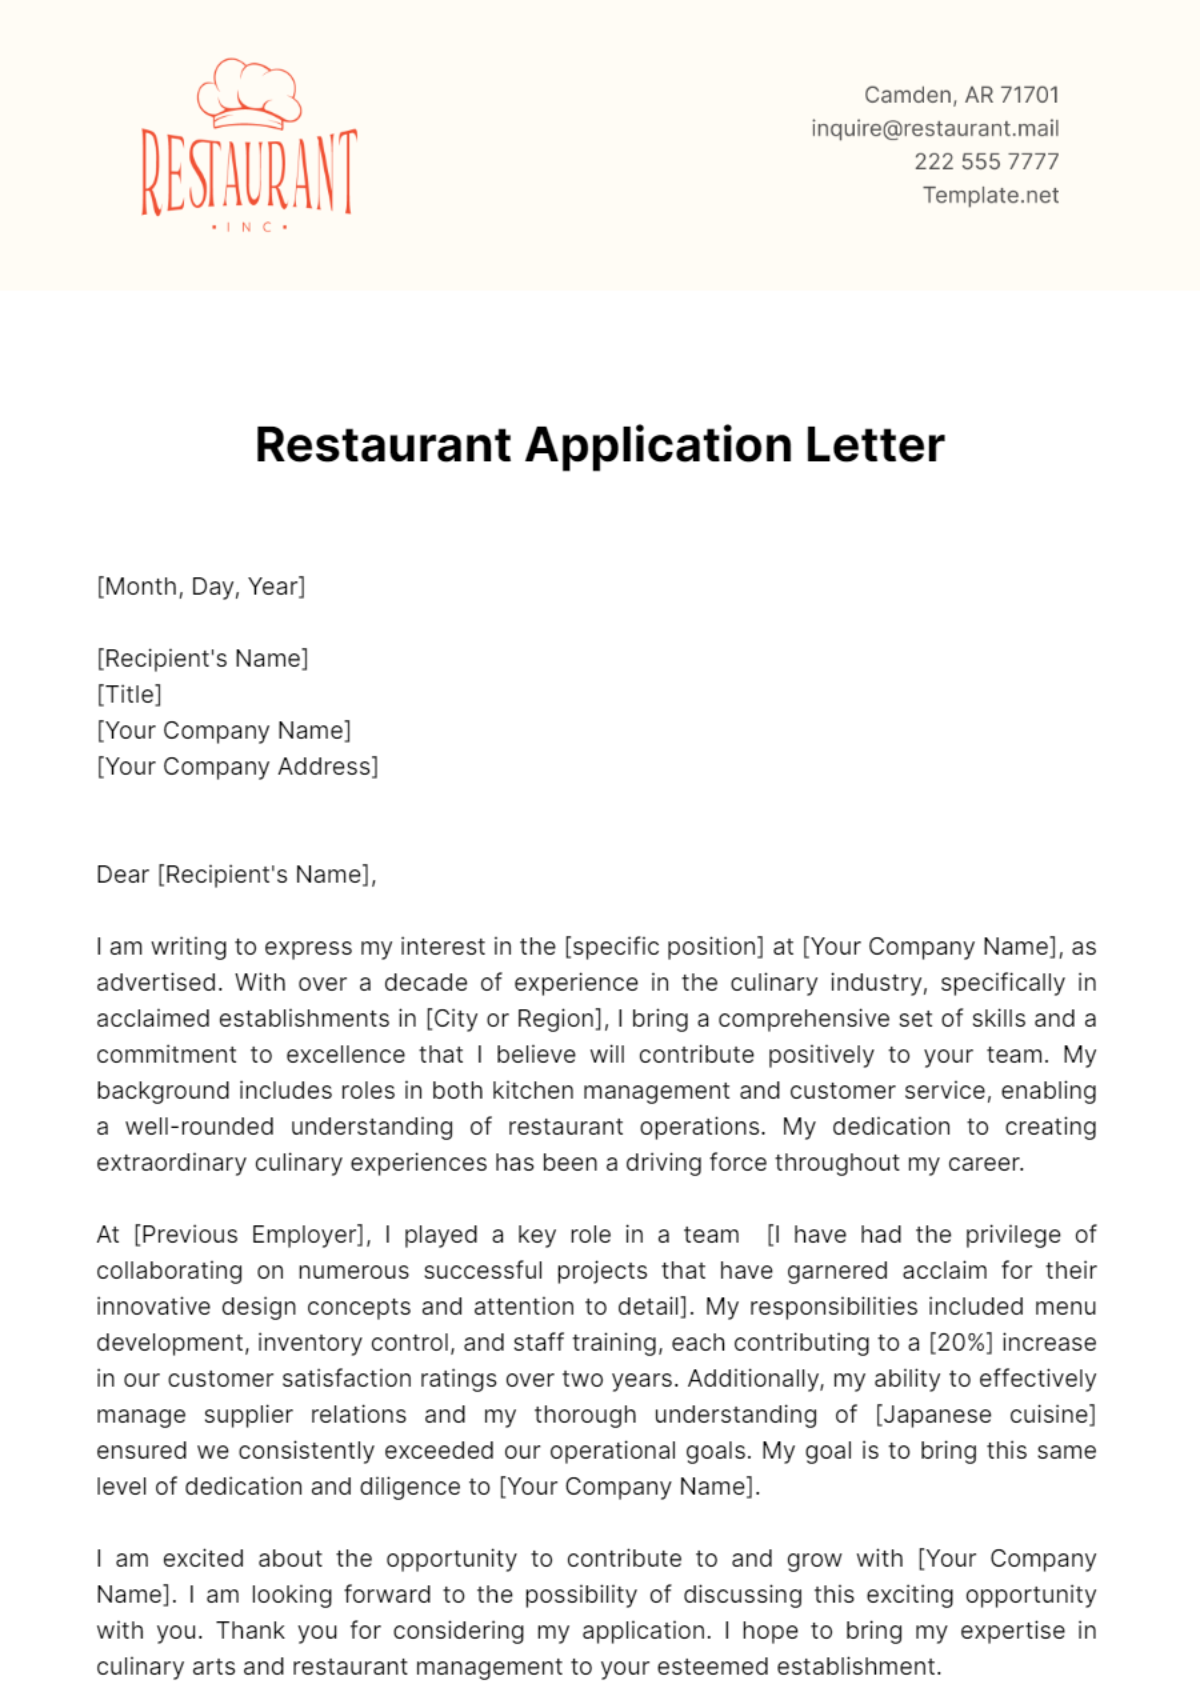 Restaurant Application Letter Template